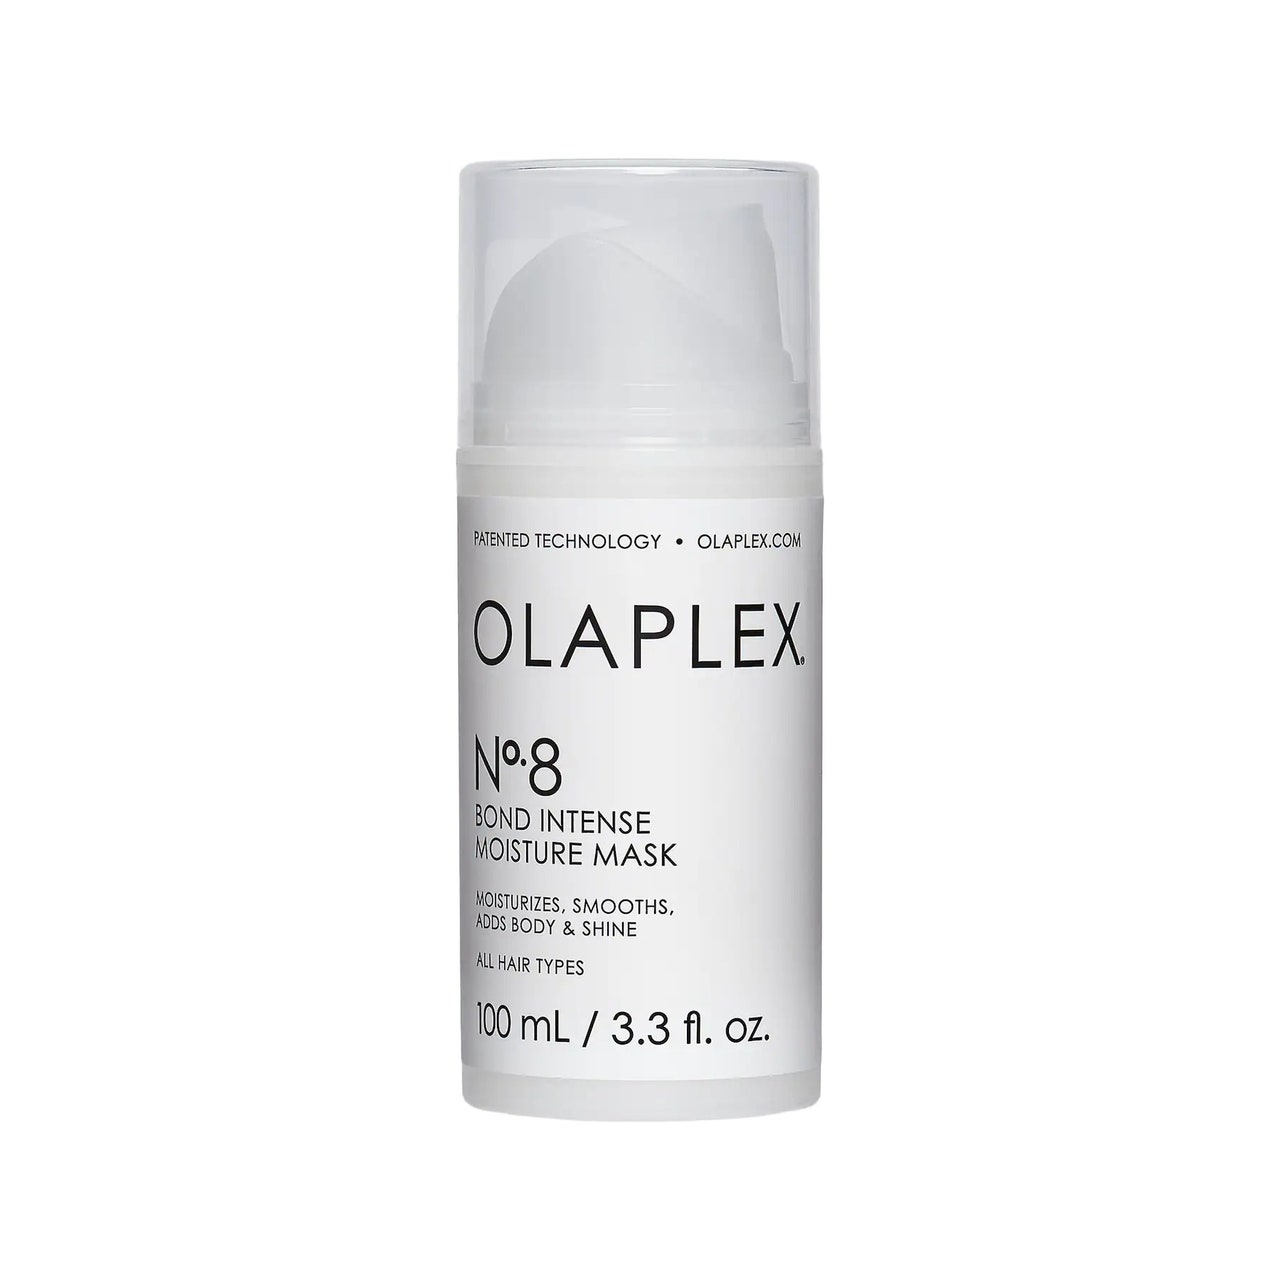 Olaplex No.8 Bond Intense Moisture Mask weißer Kanister mit Pumpdeckel auf weißem Hintergrund